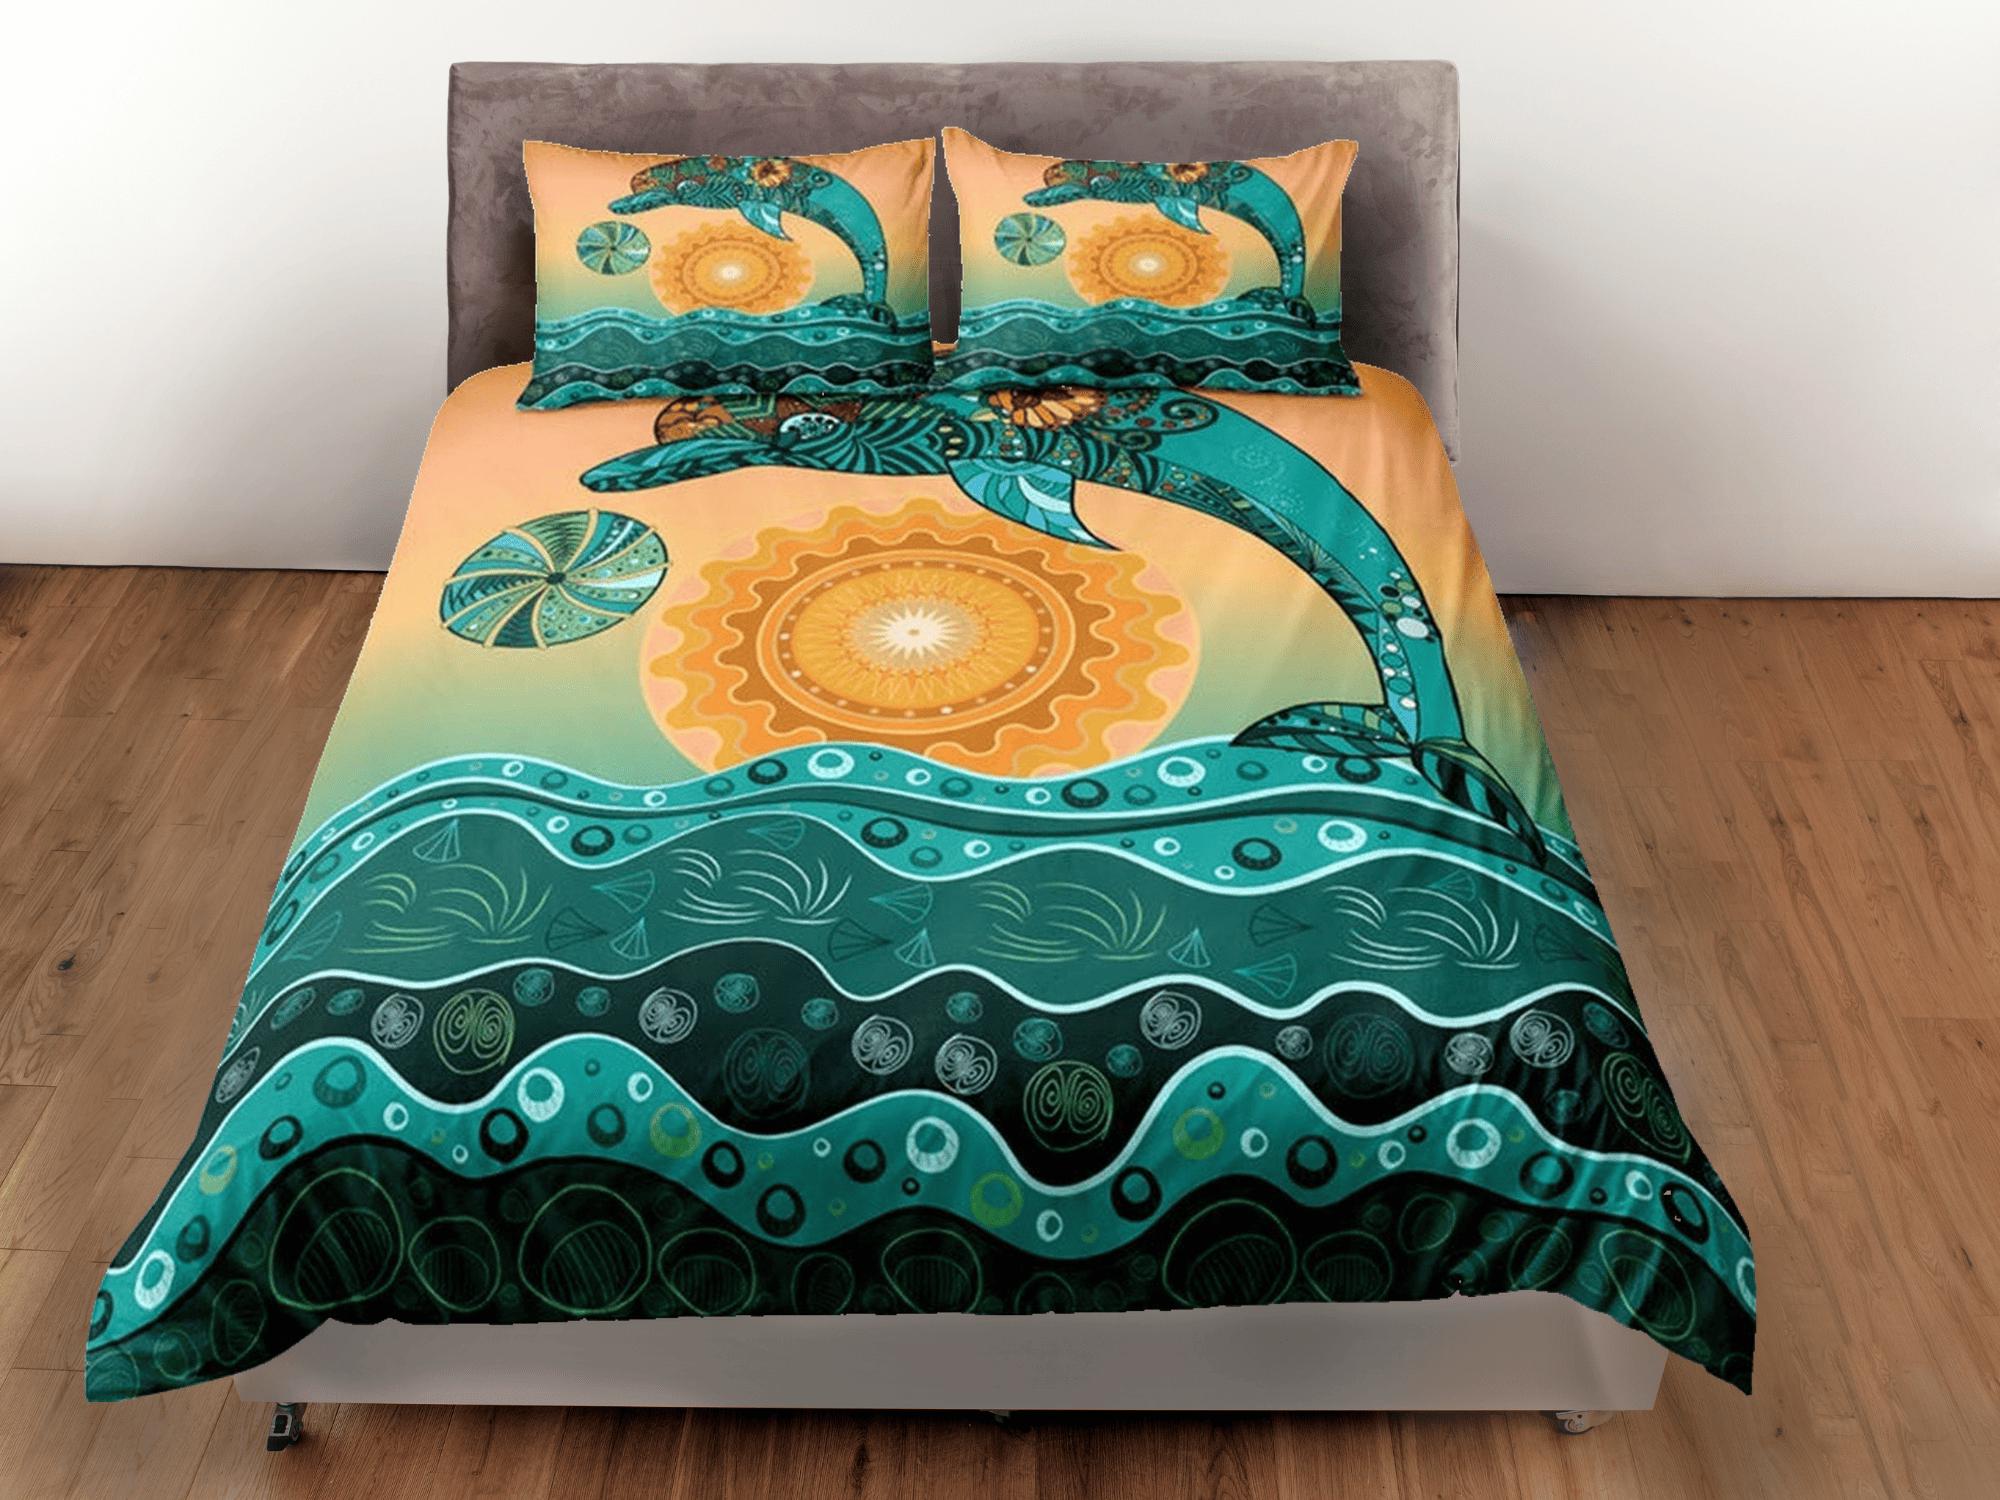 daintyduvet Tribal dolphin ethnic bedding orange green duvet cover, ocean blush decor bottle nose dolphin bedding set full king queen twin, dorm bedding